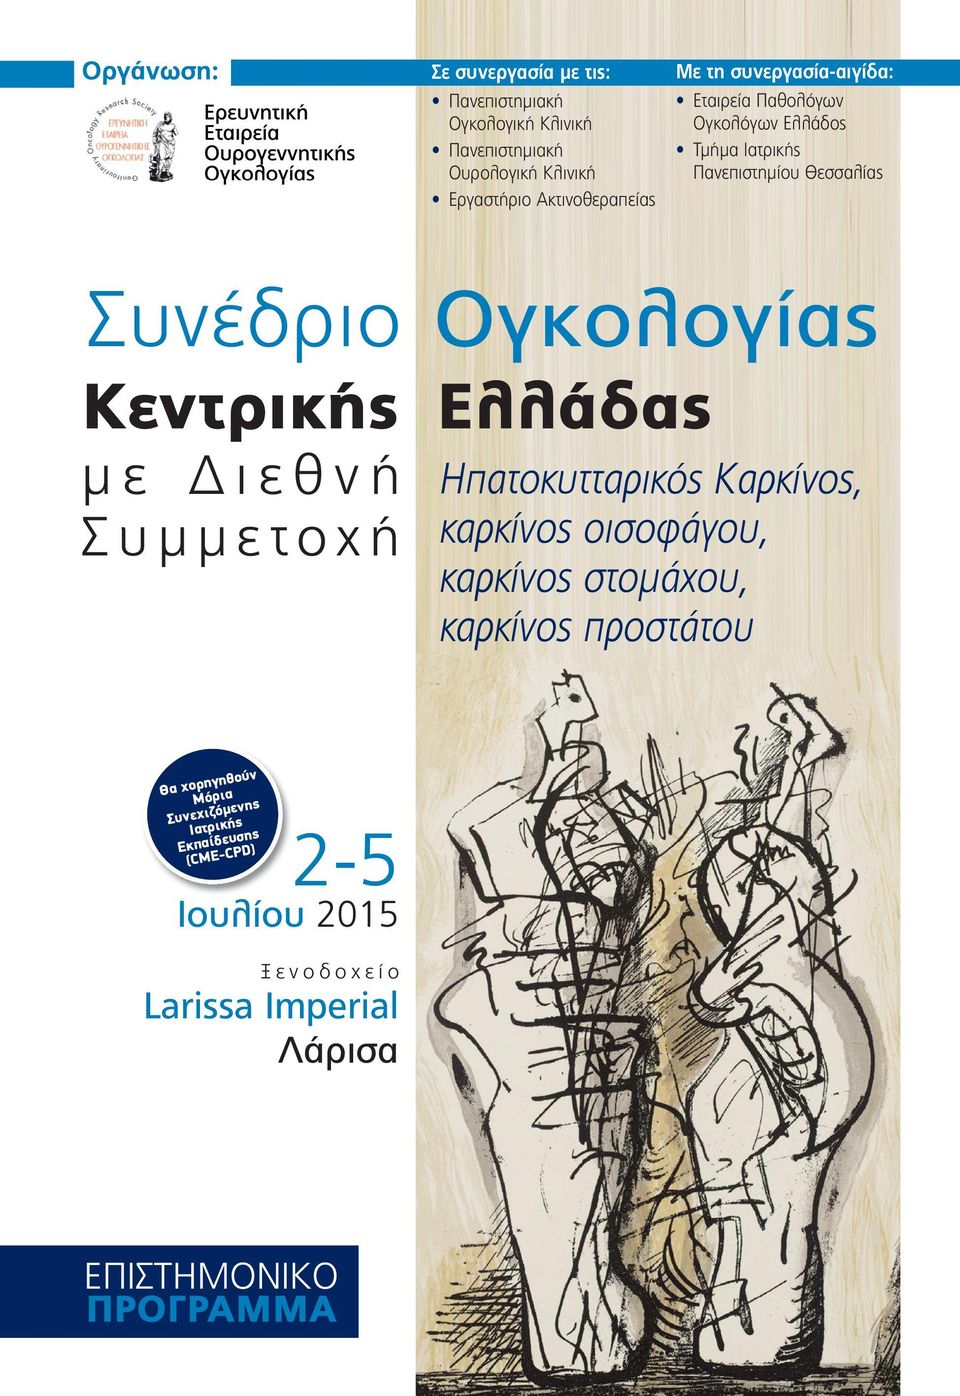 Ελλάδας με Διεθνή Συμμετοχή ν ηγηθού Θα χορ όρια Μ όμενης Συνεχιζικής Ιατρ σης ευ Εκπαίδ CPD) (CΜE- 2-5 Ιουλίου 2015